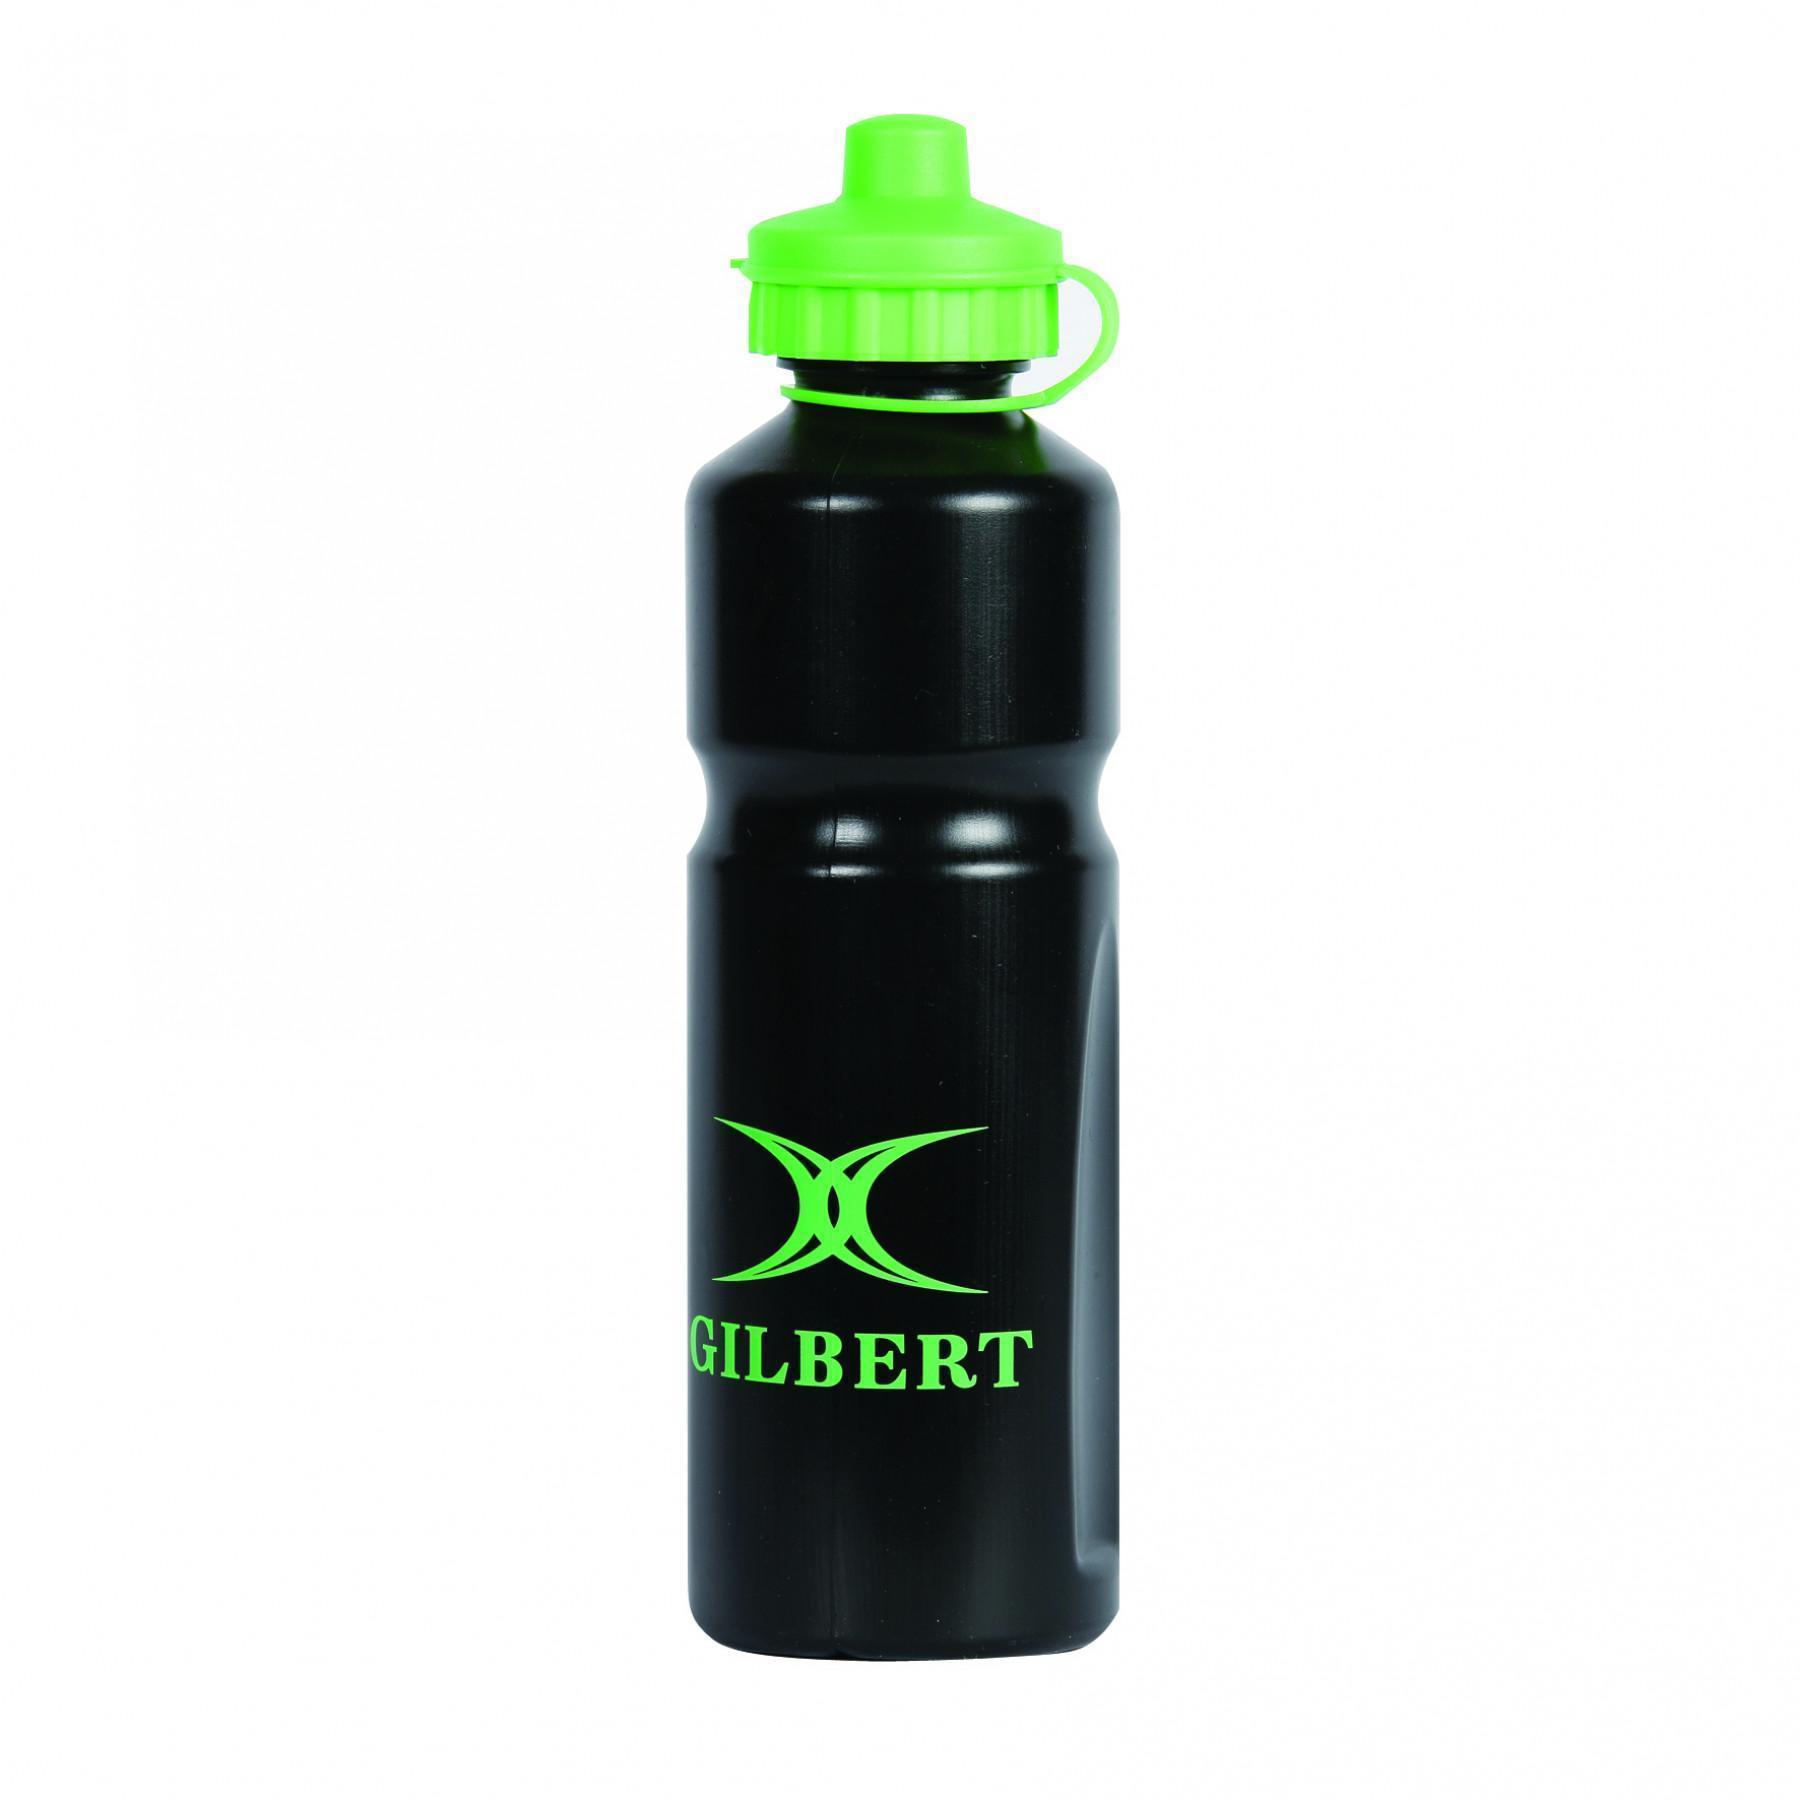 La botella de Gilbert